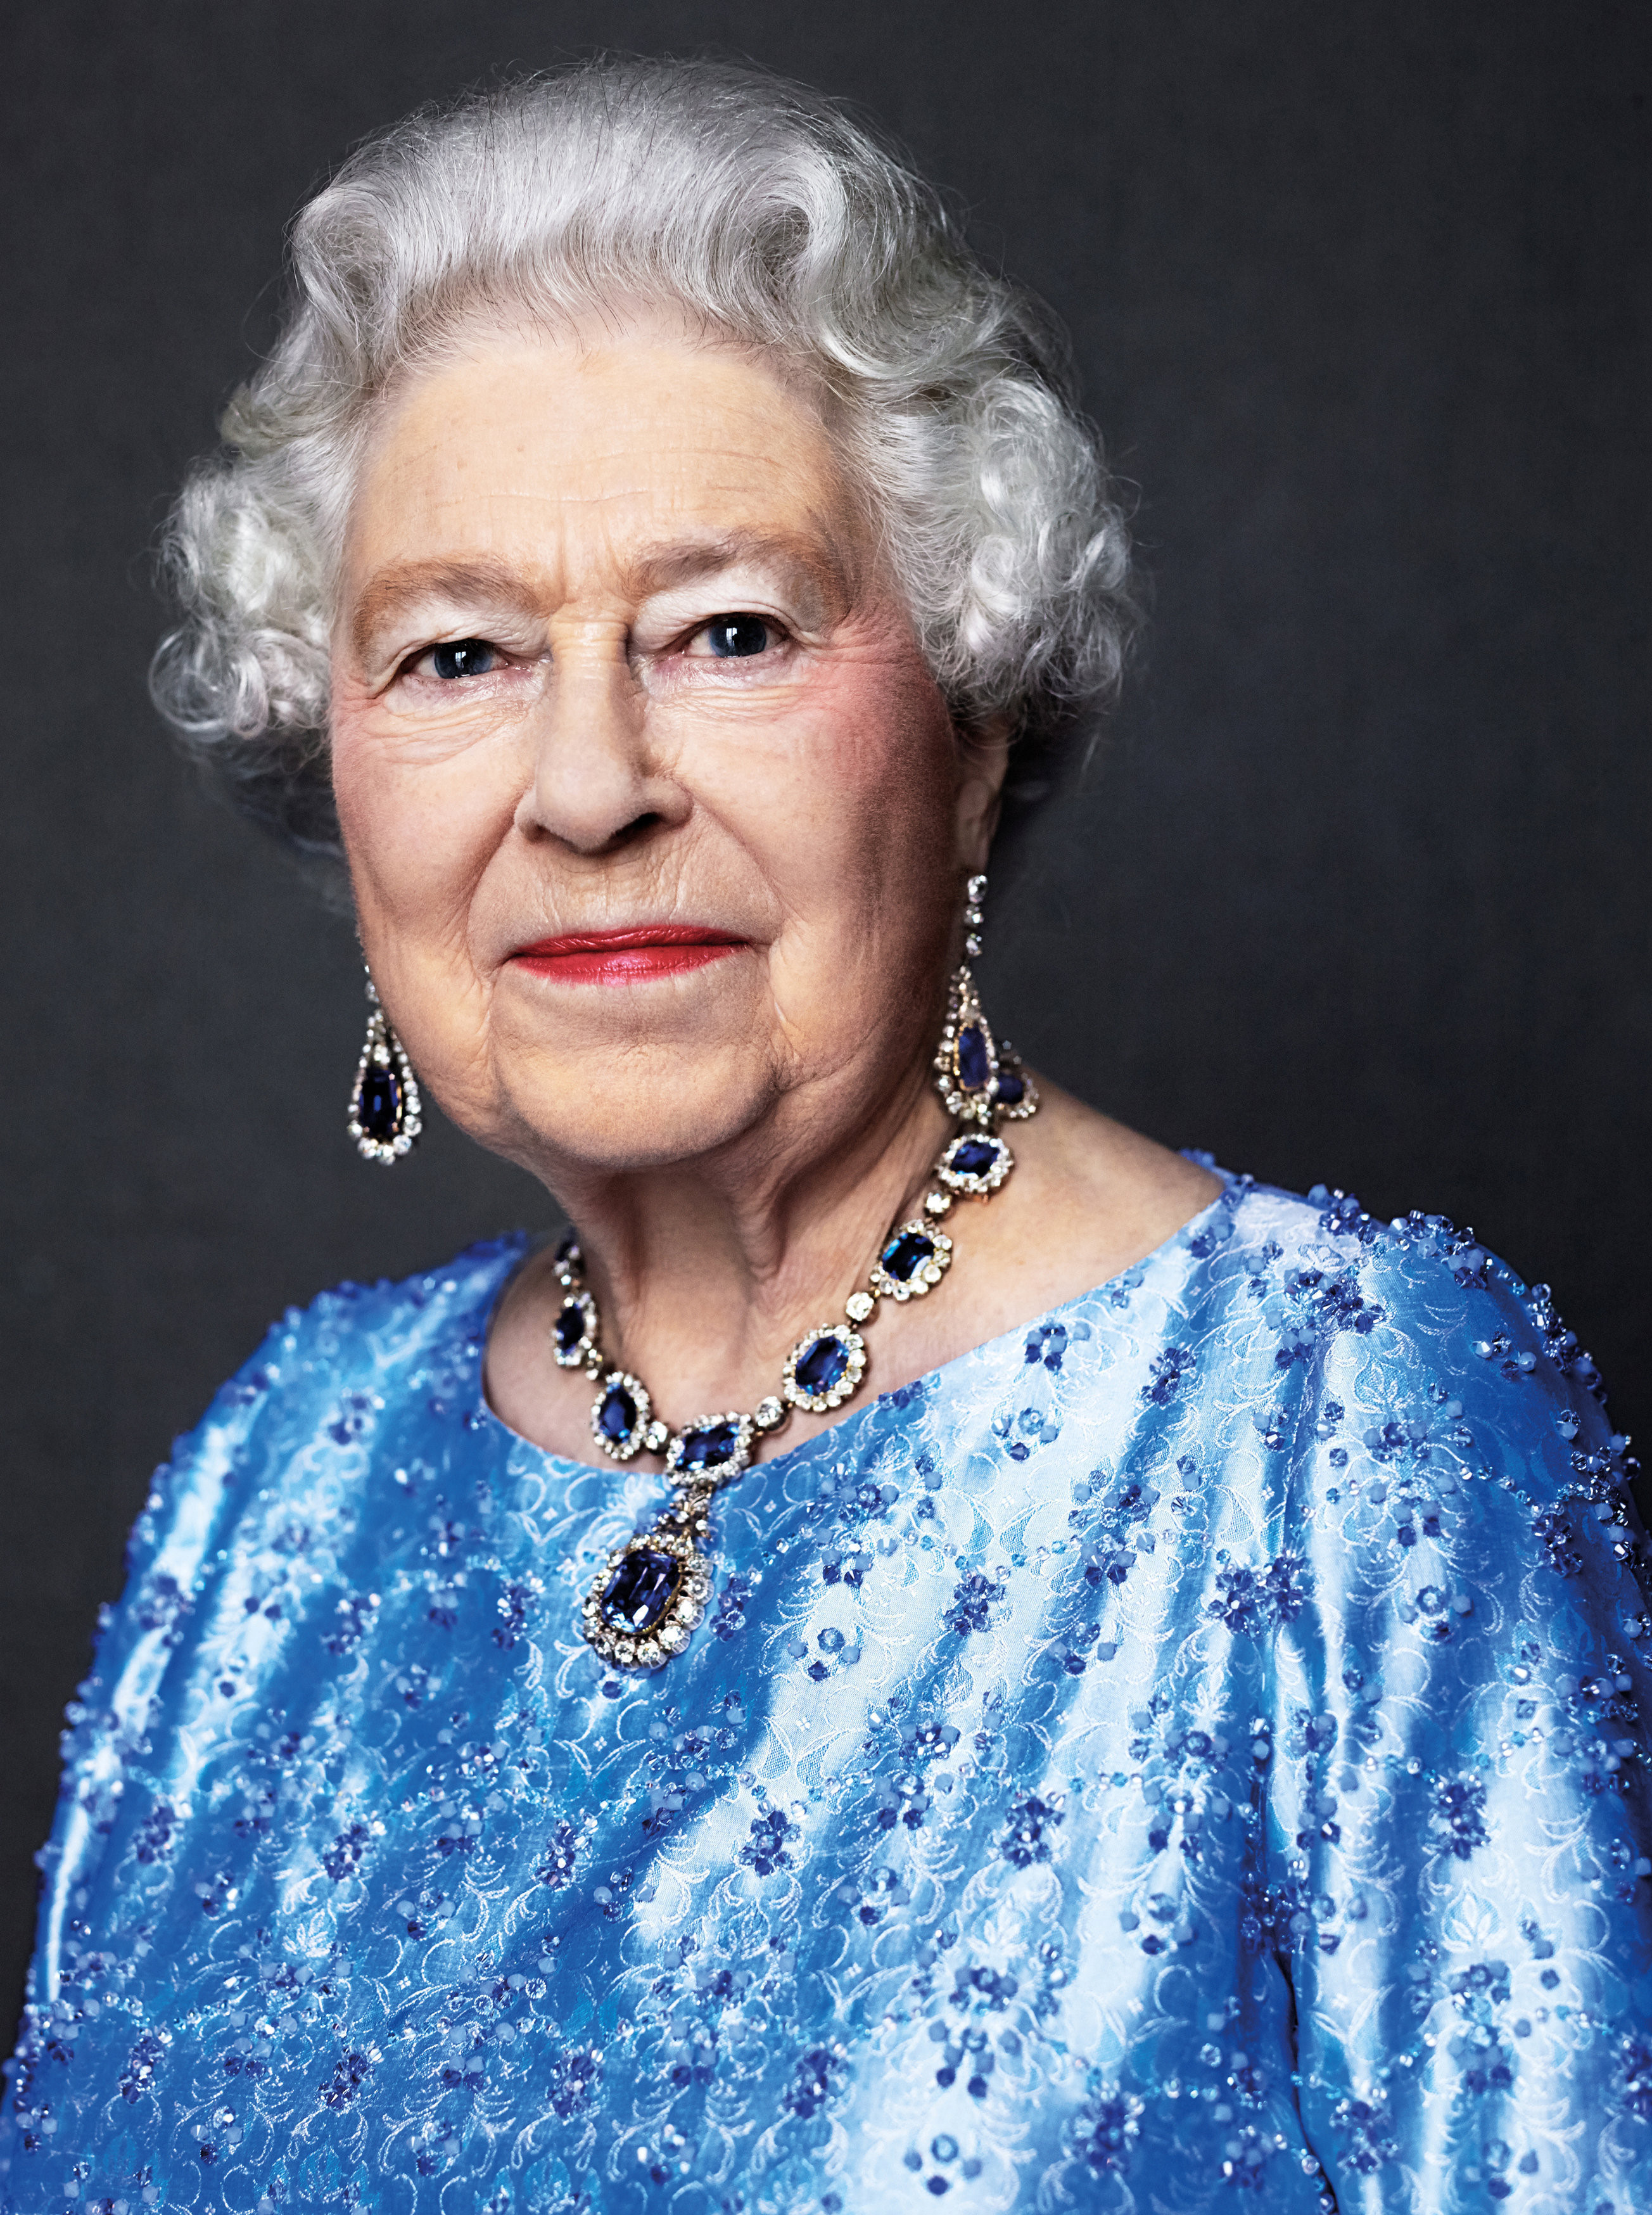 Retrato da Rainha Elizabeth II, por ocasião de seu aniversário, em 2014.